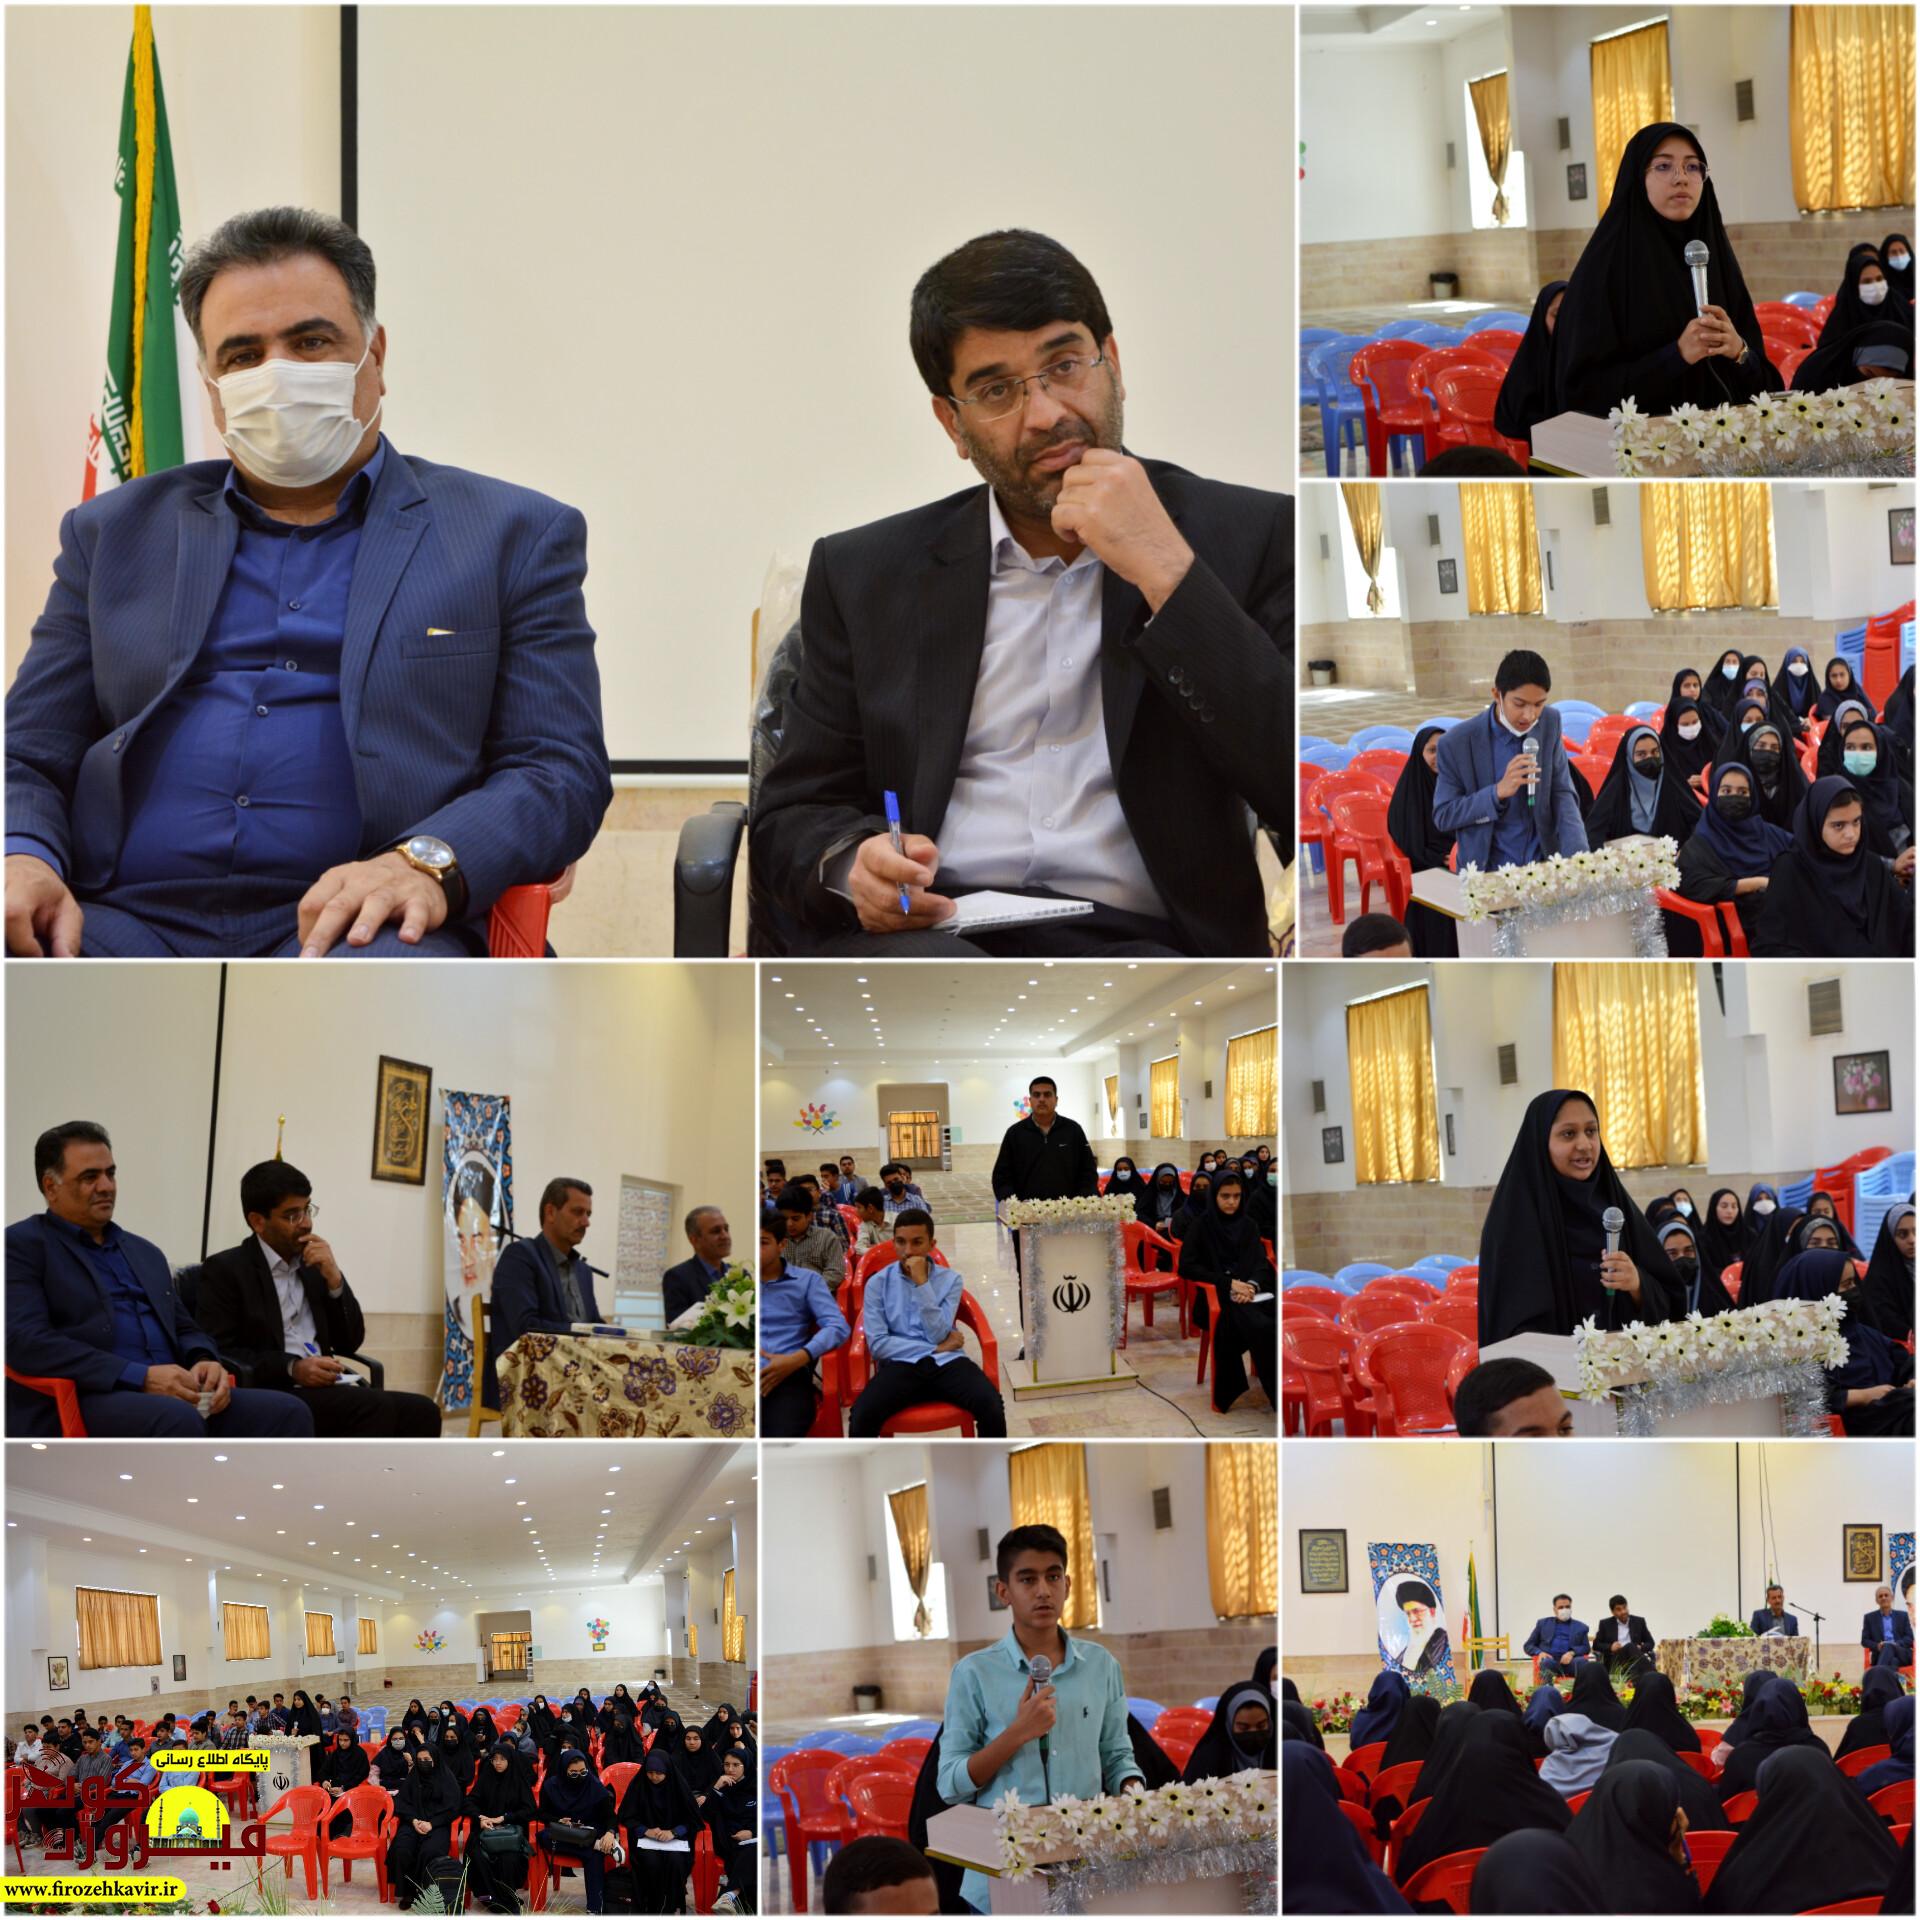 جلسه پرسش و پاسخ دانش آموزان از شهردار رفسنجان در قالب طرح” همیار آموزش”